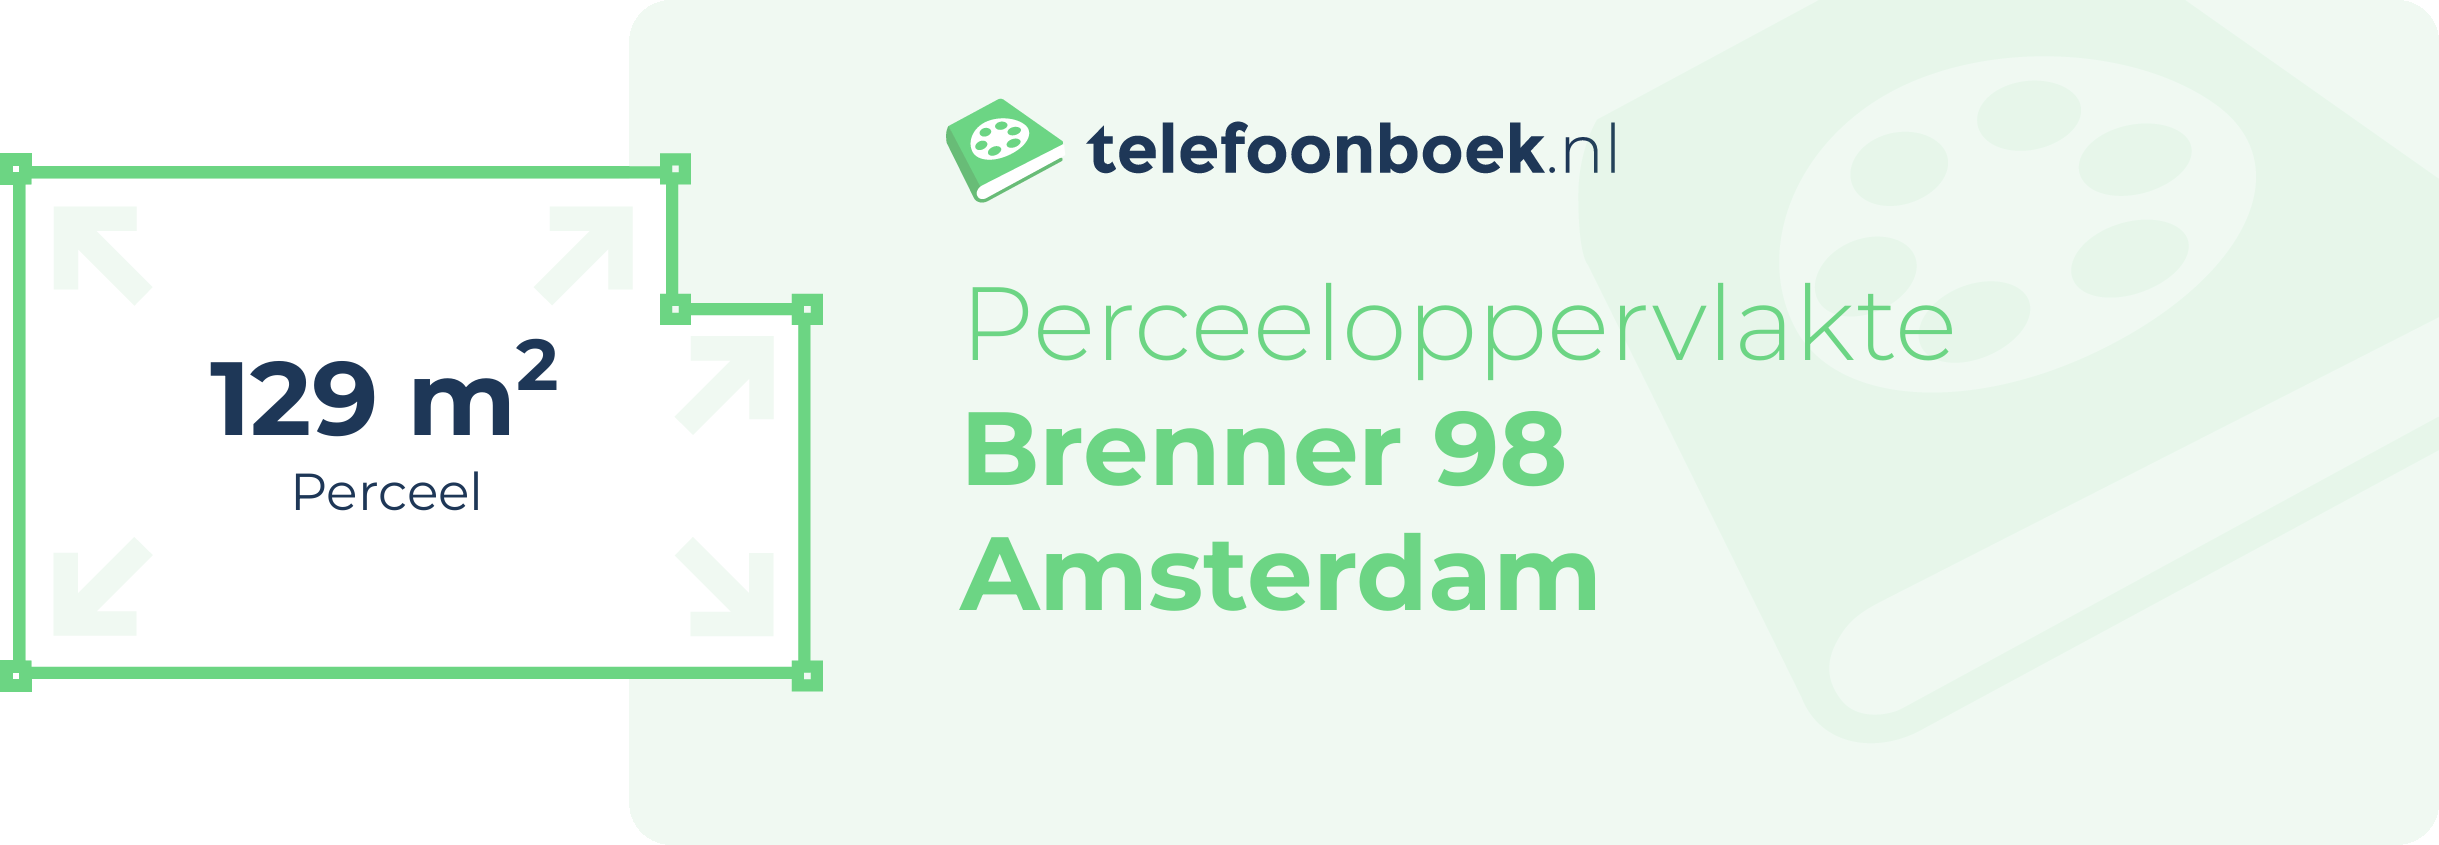 Perceeloppervlakte Brenner 98 Amsterdam